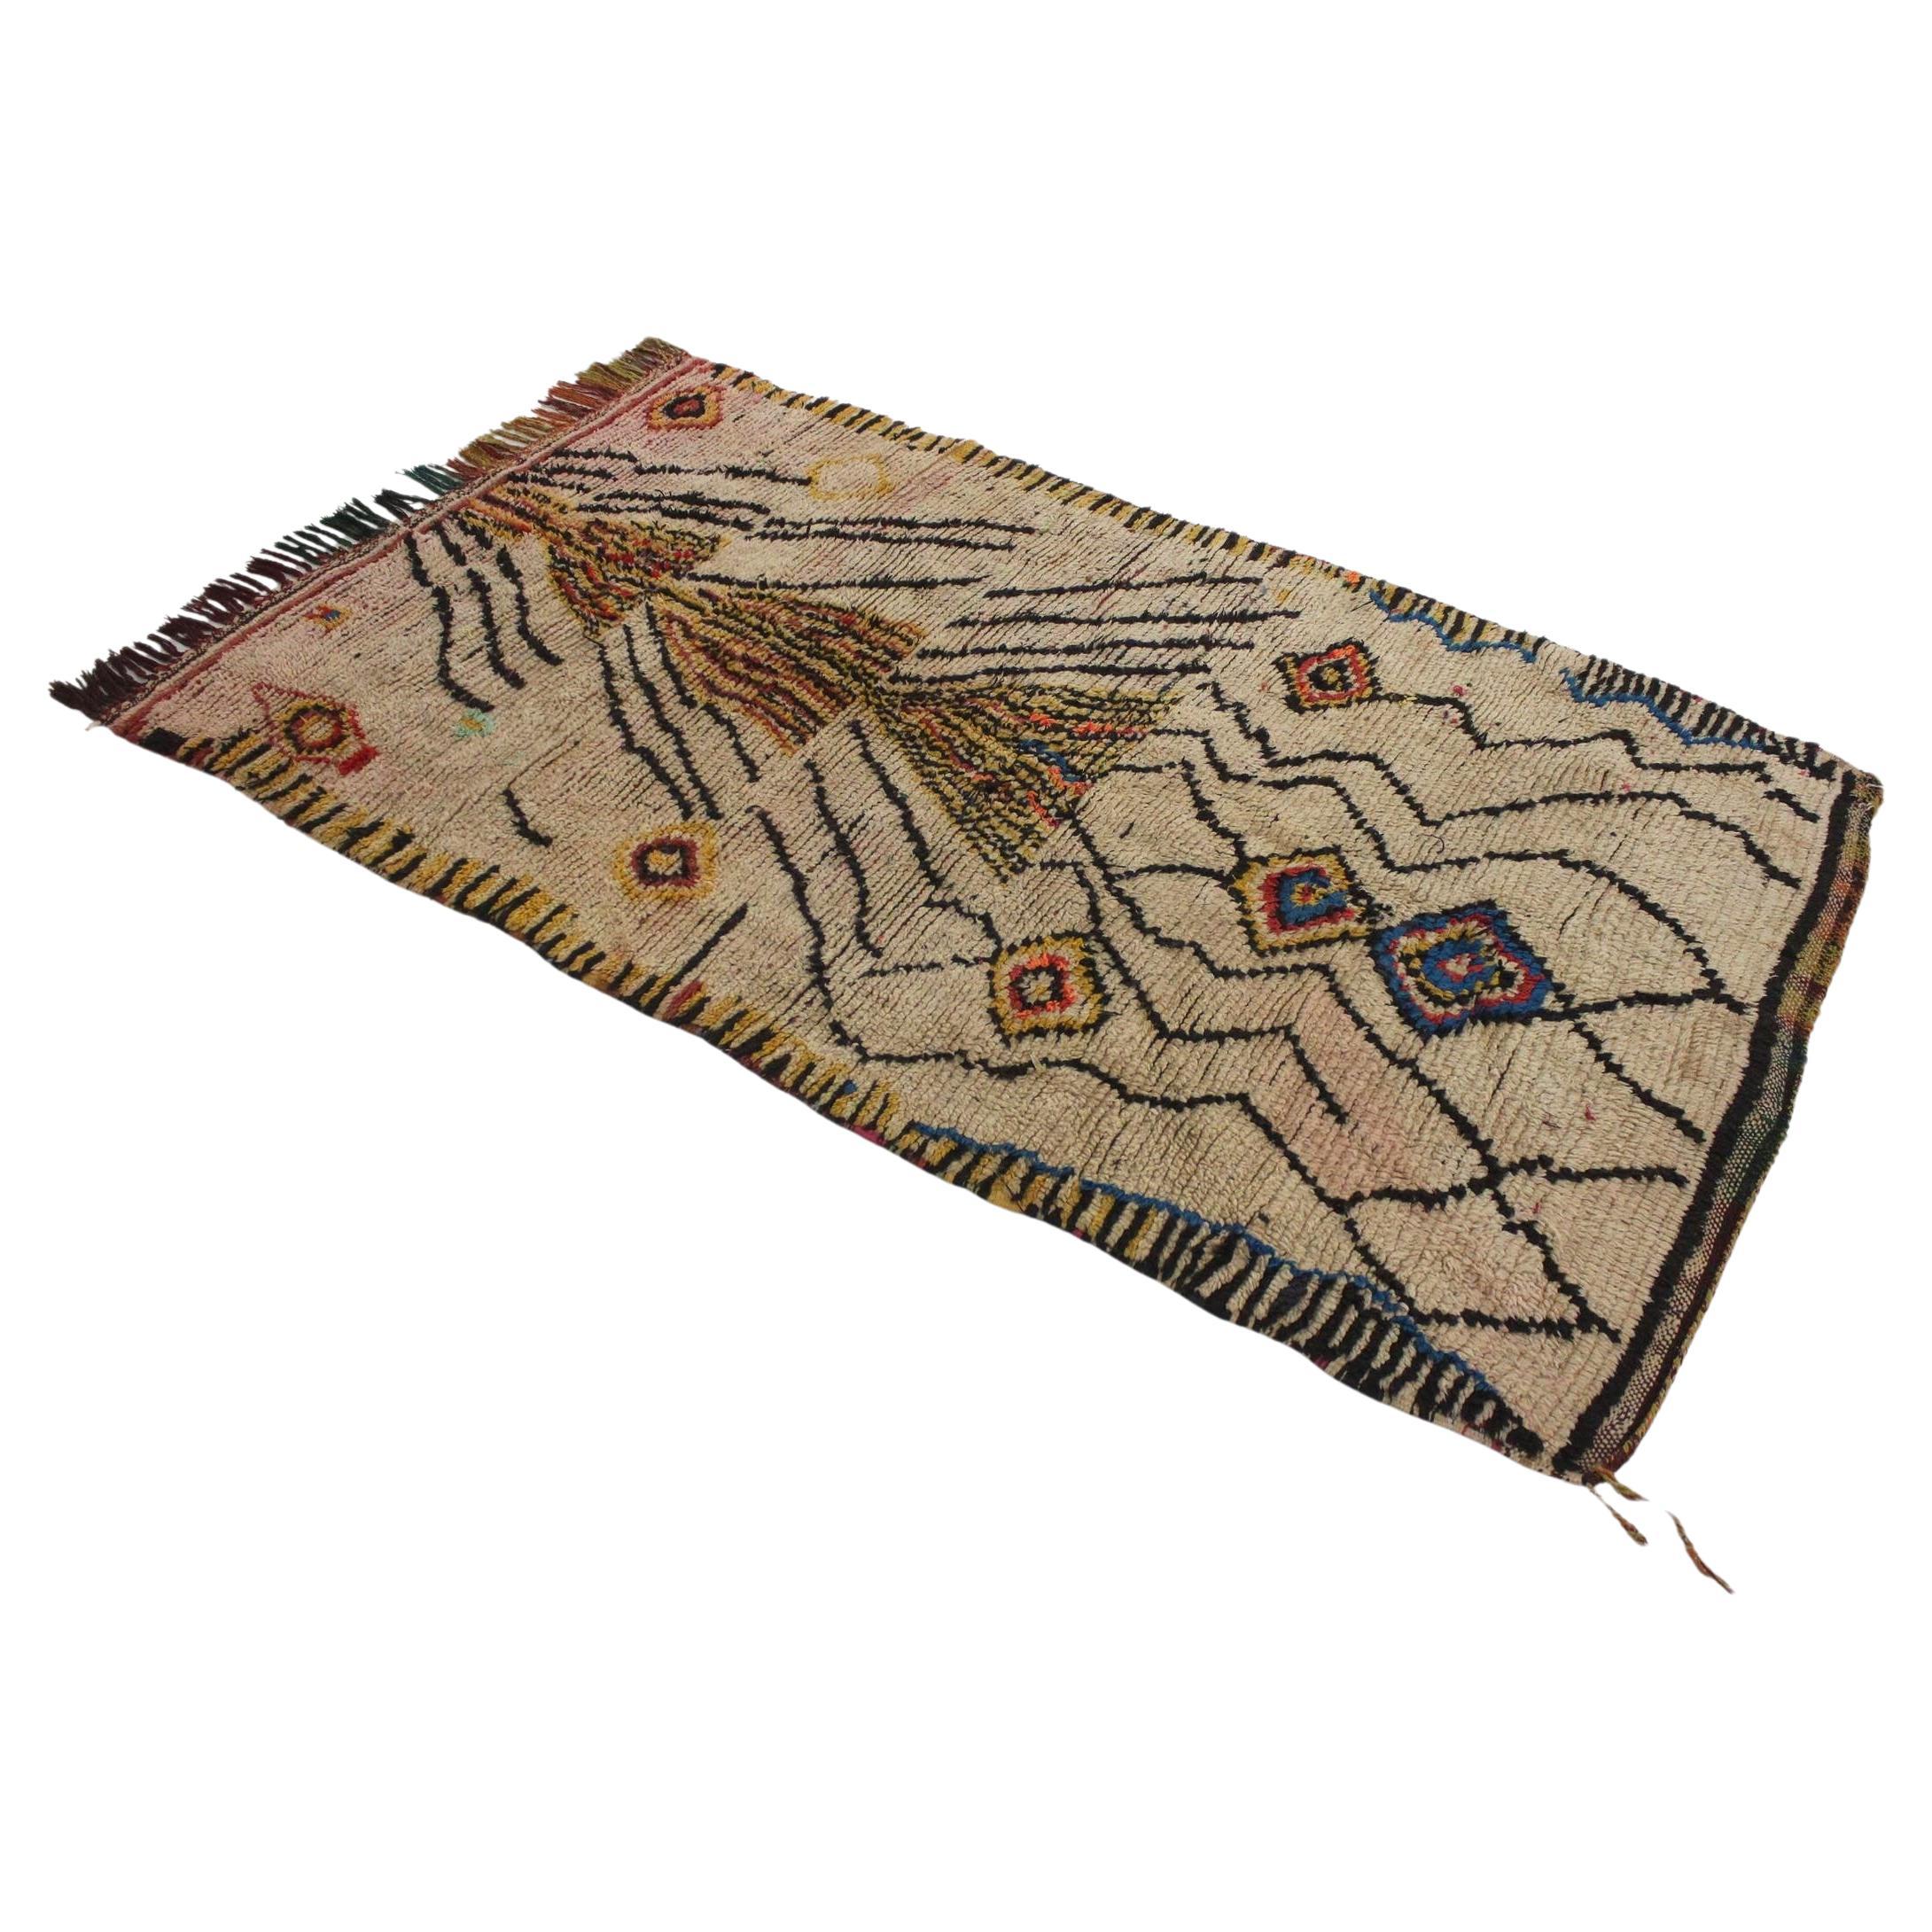 Vintage marokkanischen Azilal Teppich - Beige/gelb - 3.9x6.7feet / 120x206cm